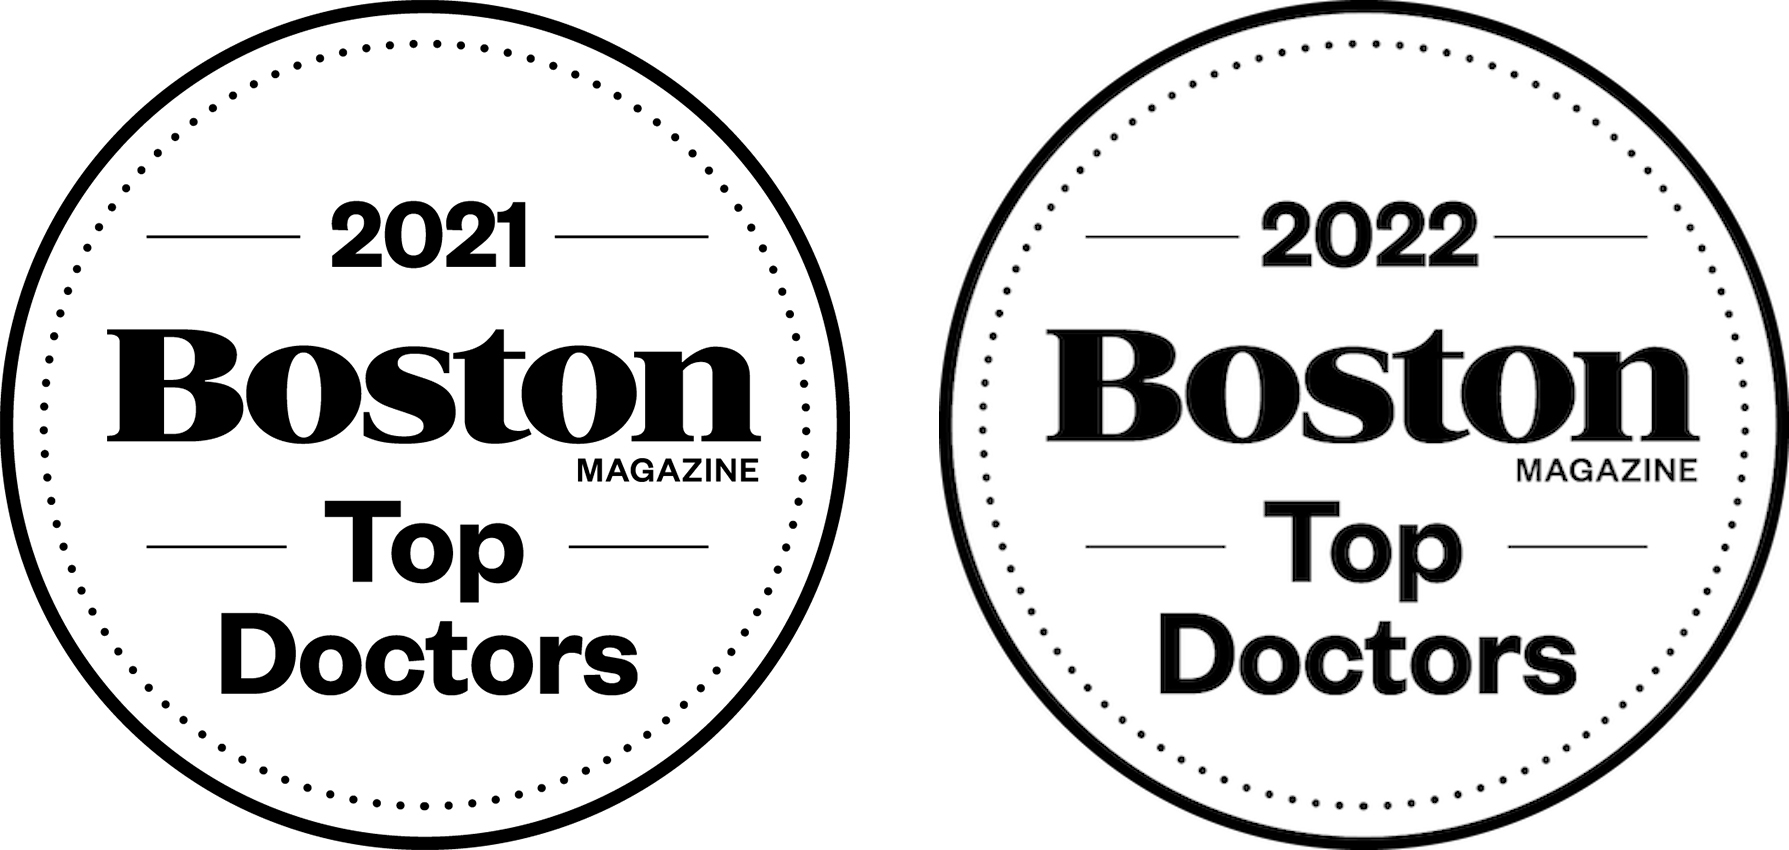 Boston Magazine - Top Doctors 2021